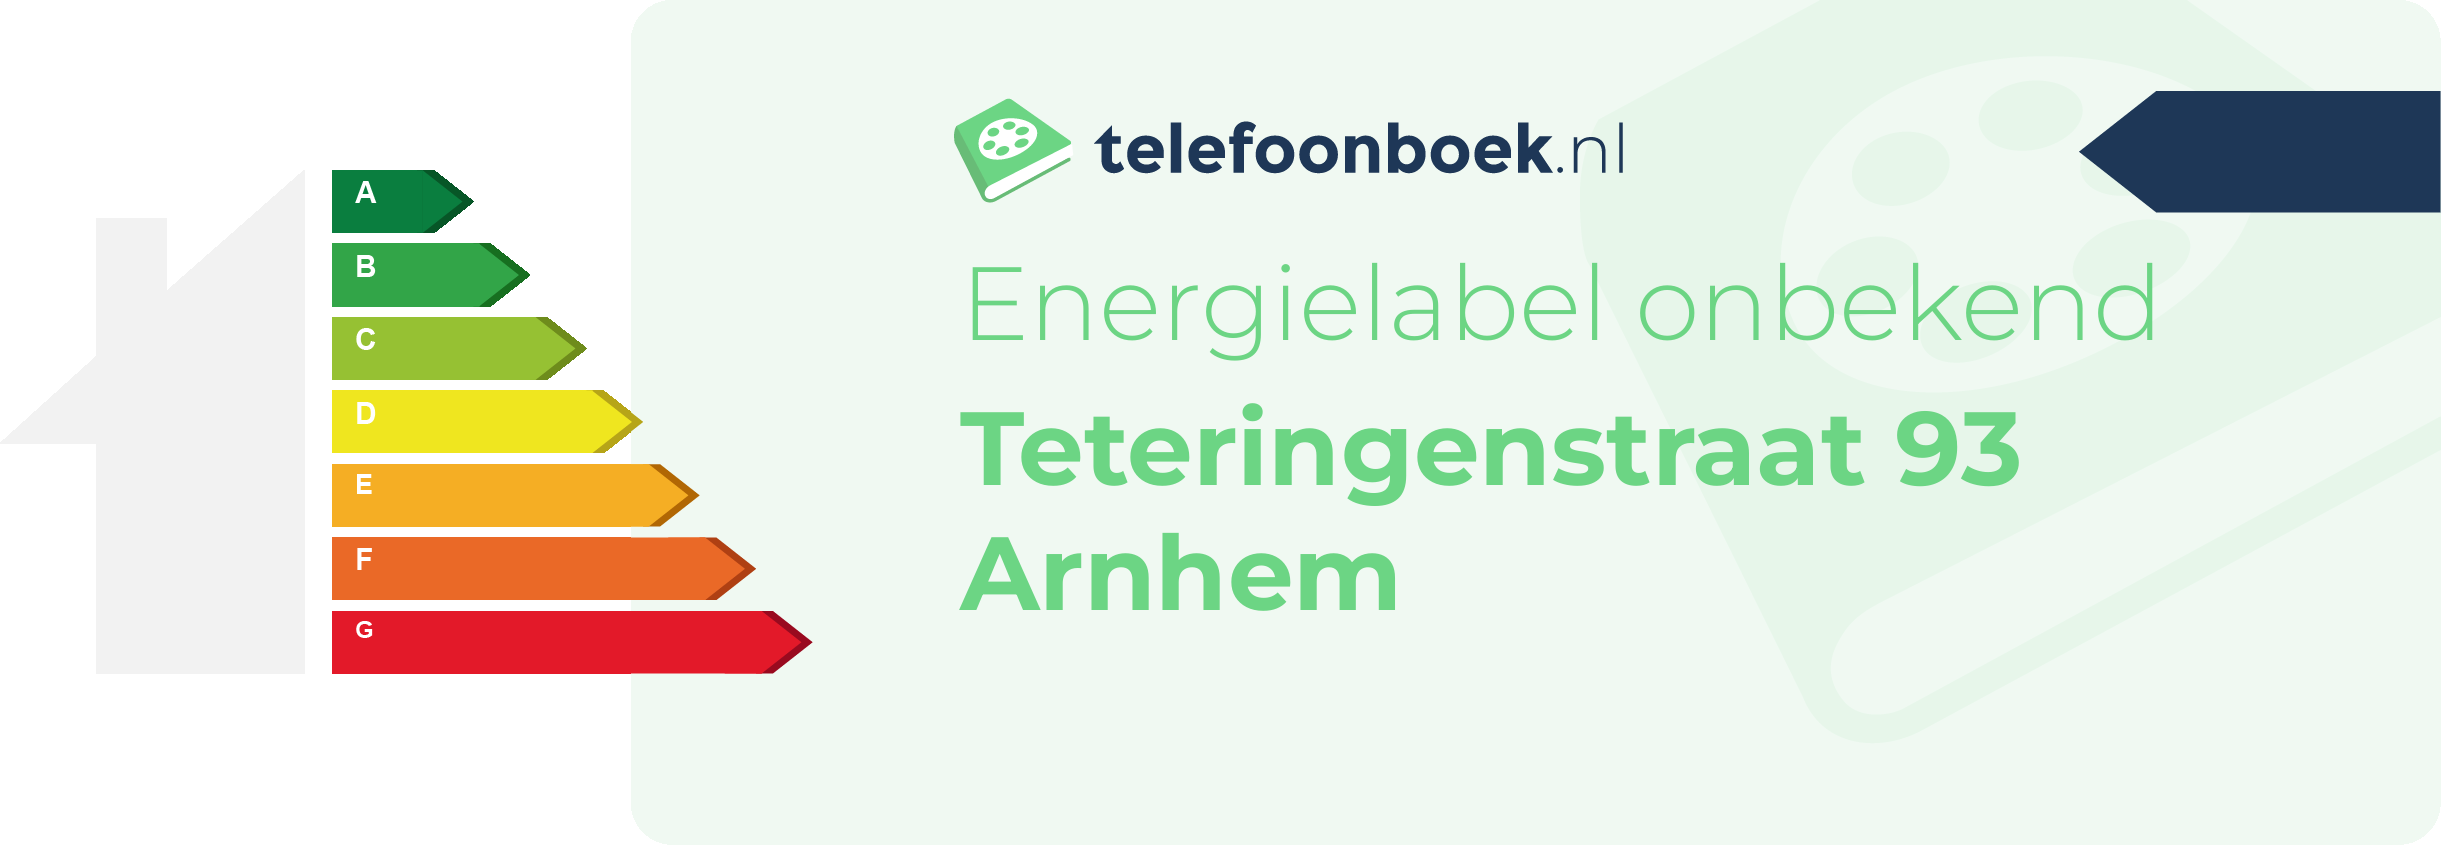 Energielabel Teteringenstraat 93 Arnhem